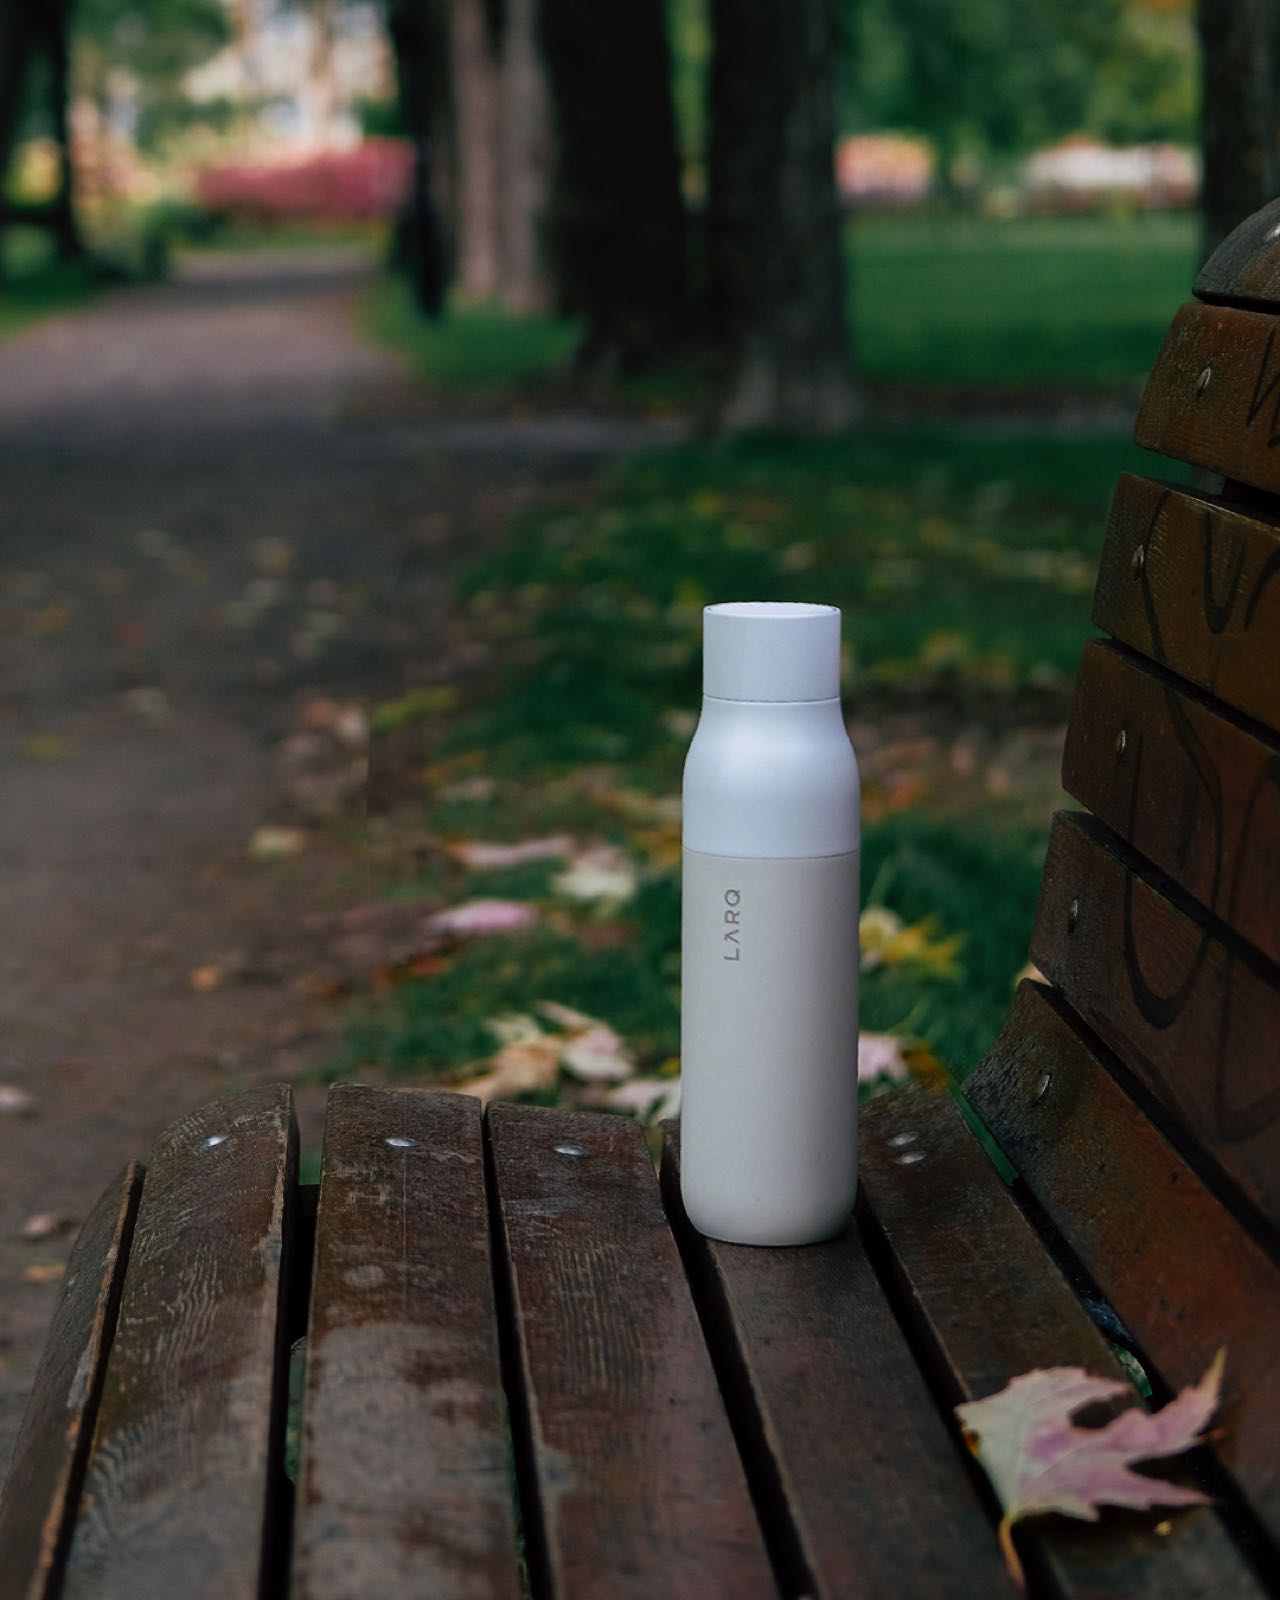 Die Flasche von Larq ist die erste selbstreinigende und wasseraufbereitende Flasche der Welt. Durch die Technologie werden Keime und Mikroorganismen fast komplett eliminiert. Sie hat bereit den „Red Dot Design Award“ erhalten. Erhältlich sind sie in unterschiedlichen Ausführungen, Farben und Größen.